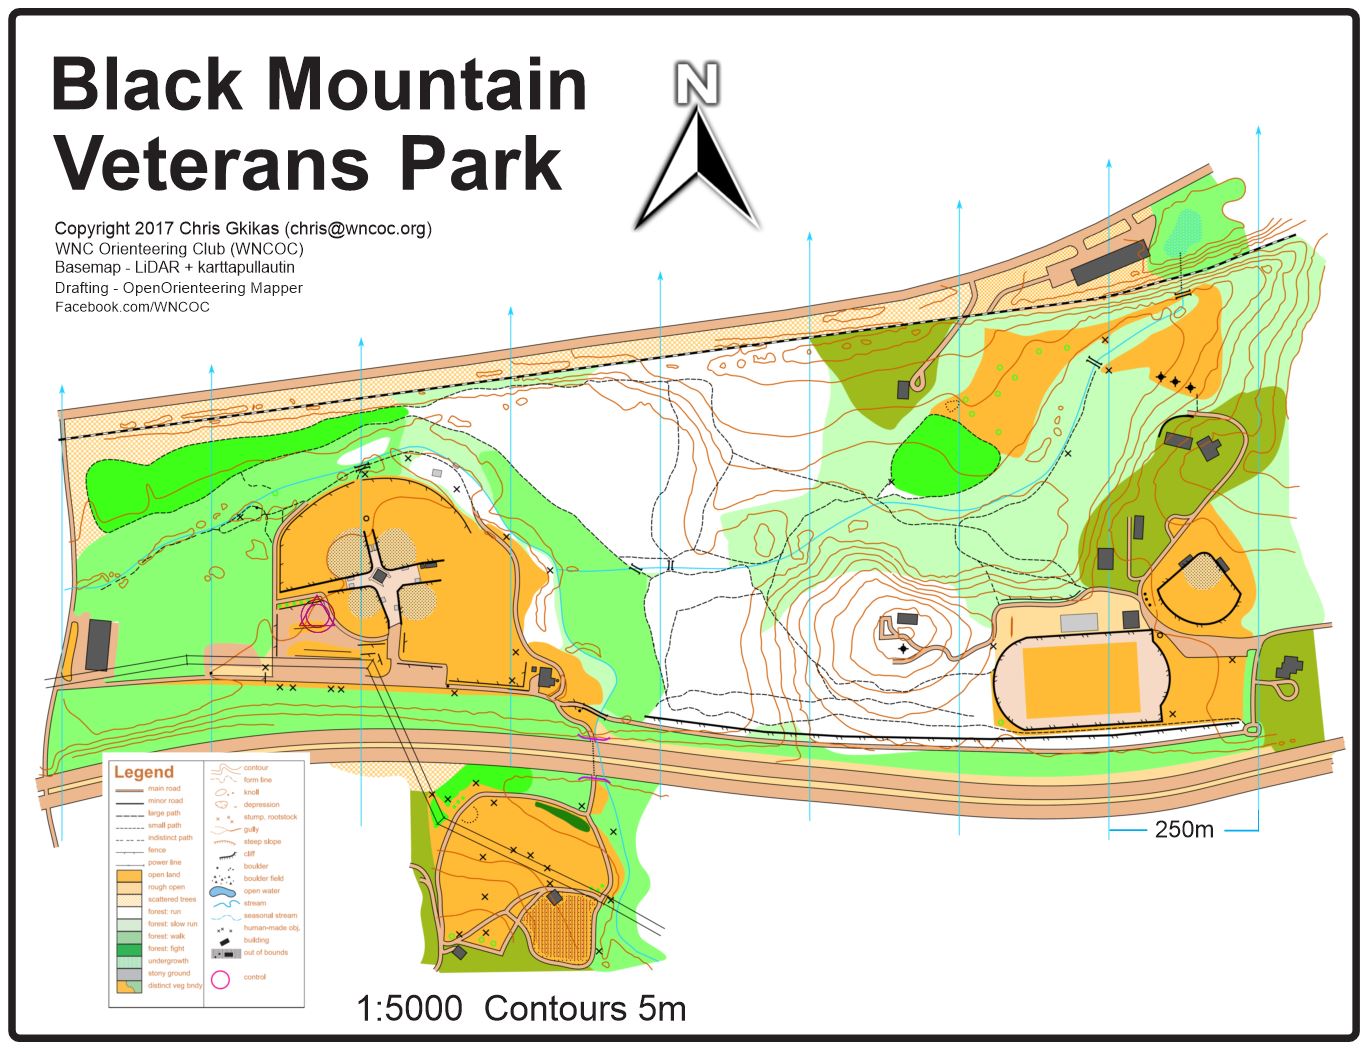 Black Mountain Veterans Park